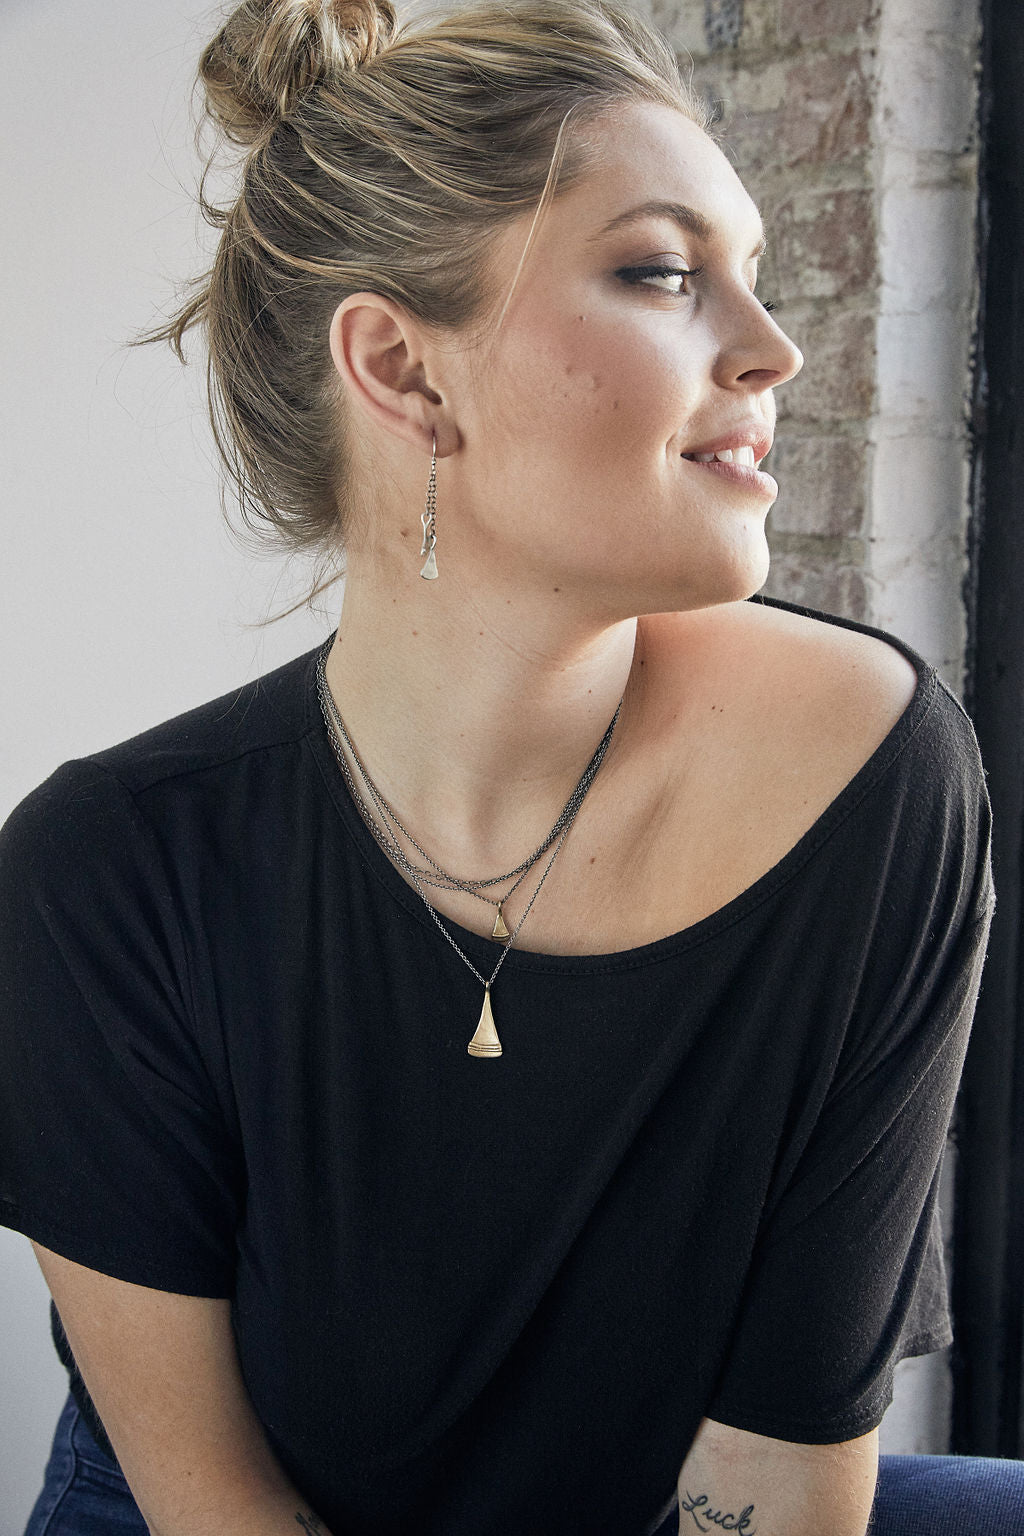 Rhea Earrings | Bronze